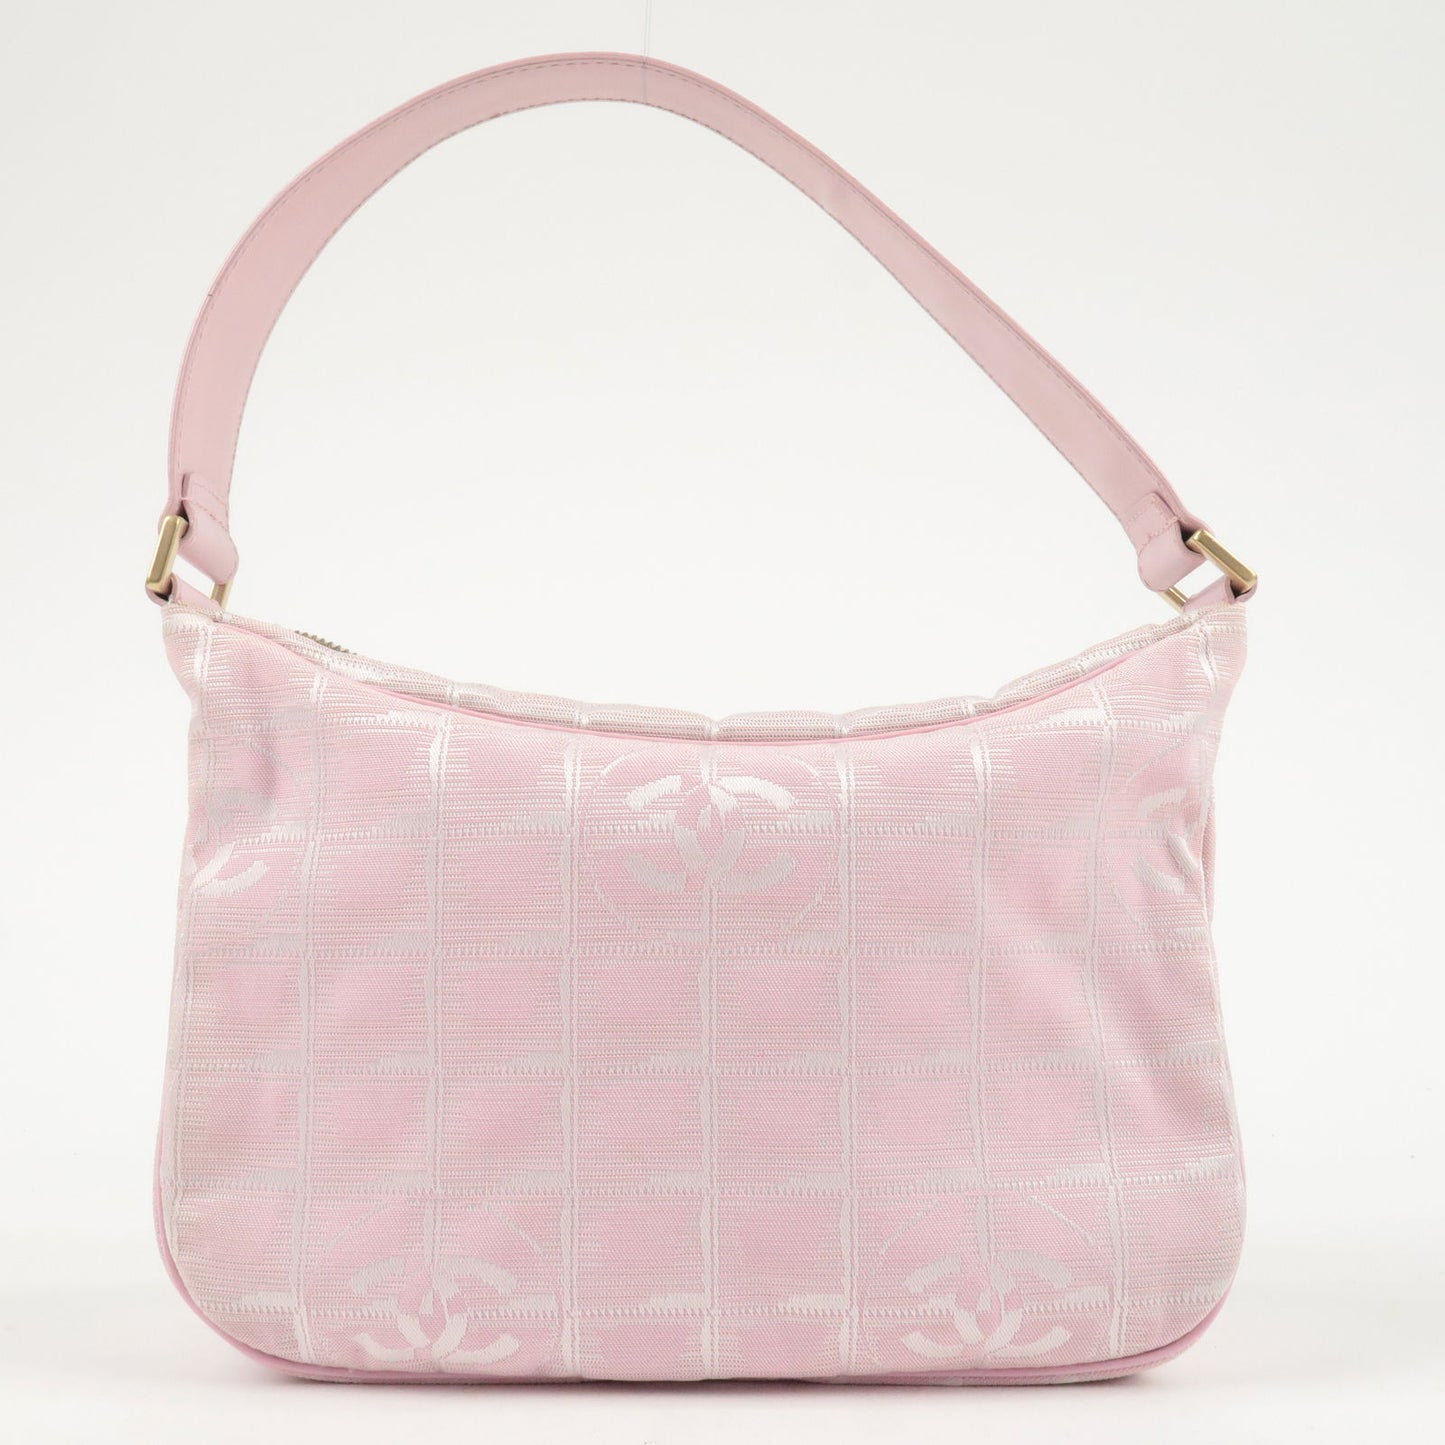 CHANEL Travel Line Nylon Jacquard Leather Shoulder Bag Pink A20516